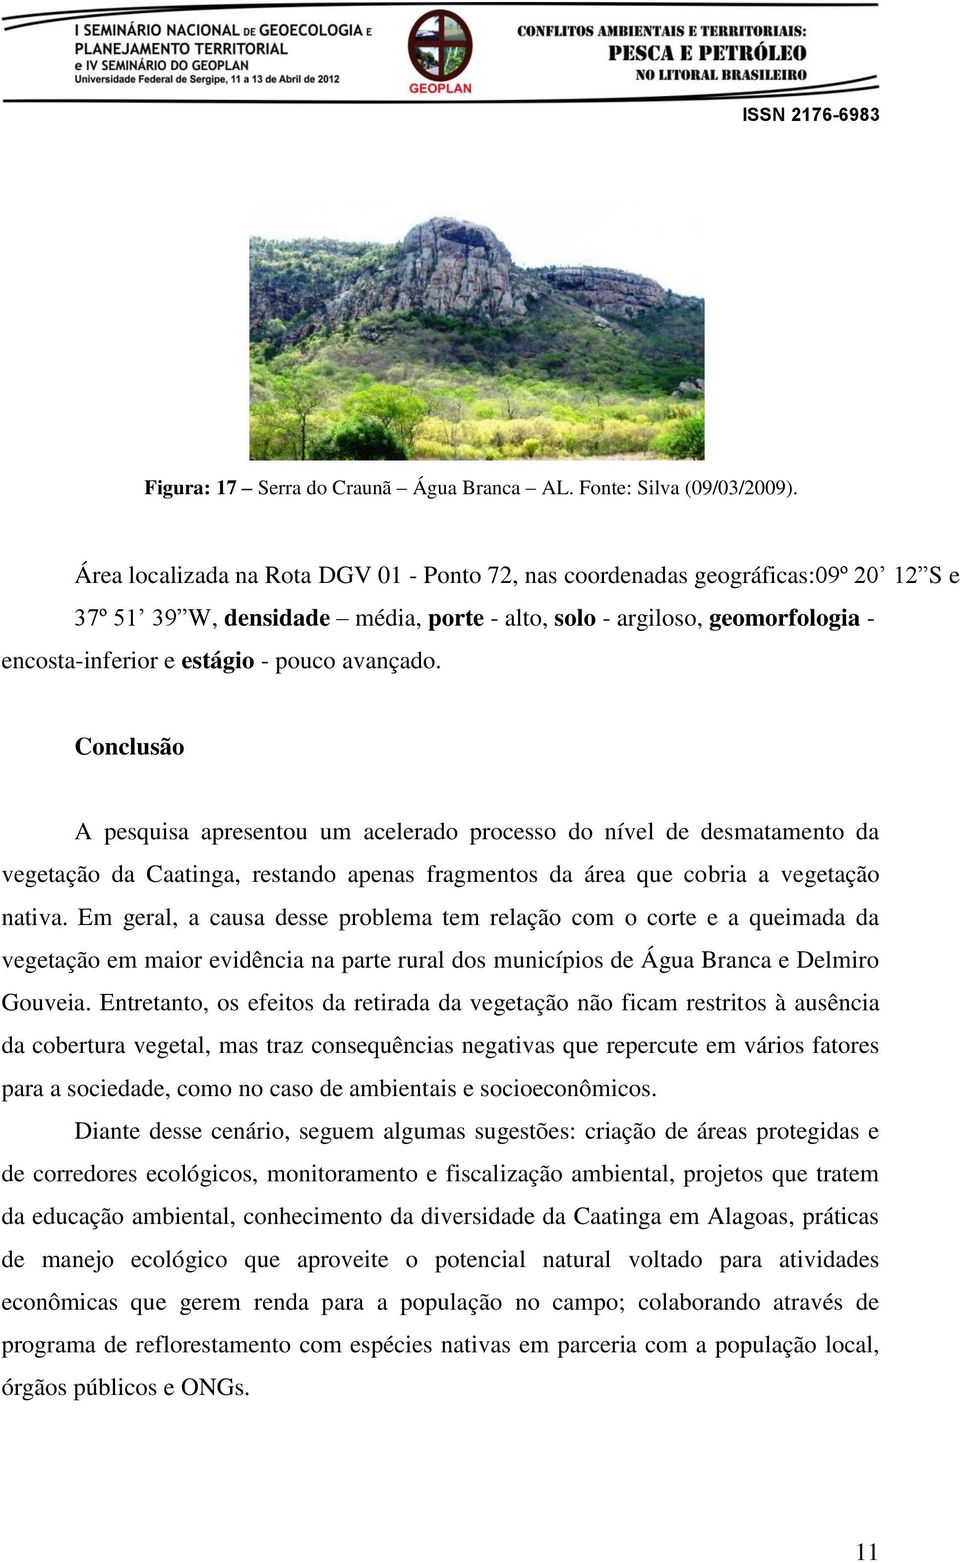 avançado. Conclusão A pesquisa apresentou um acelerado processo do nível de desmatamento da vegetação da Caatinga, restando apenas fragmentos da área que cobria a vegetação nativa.